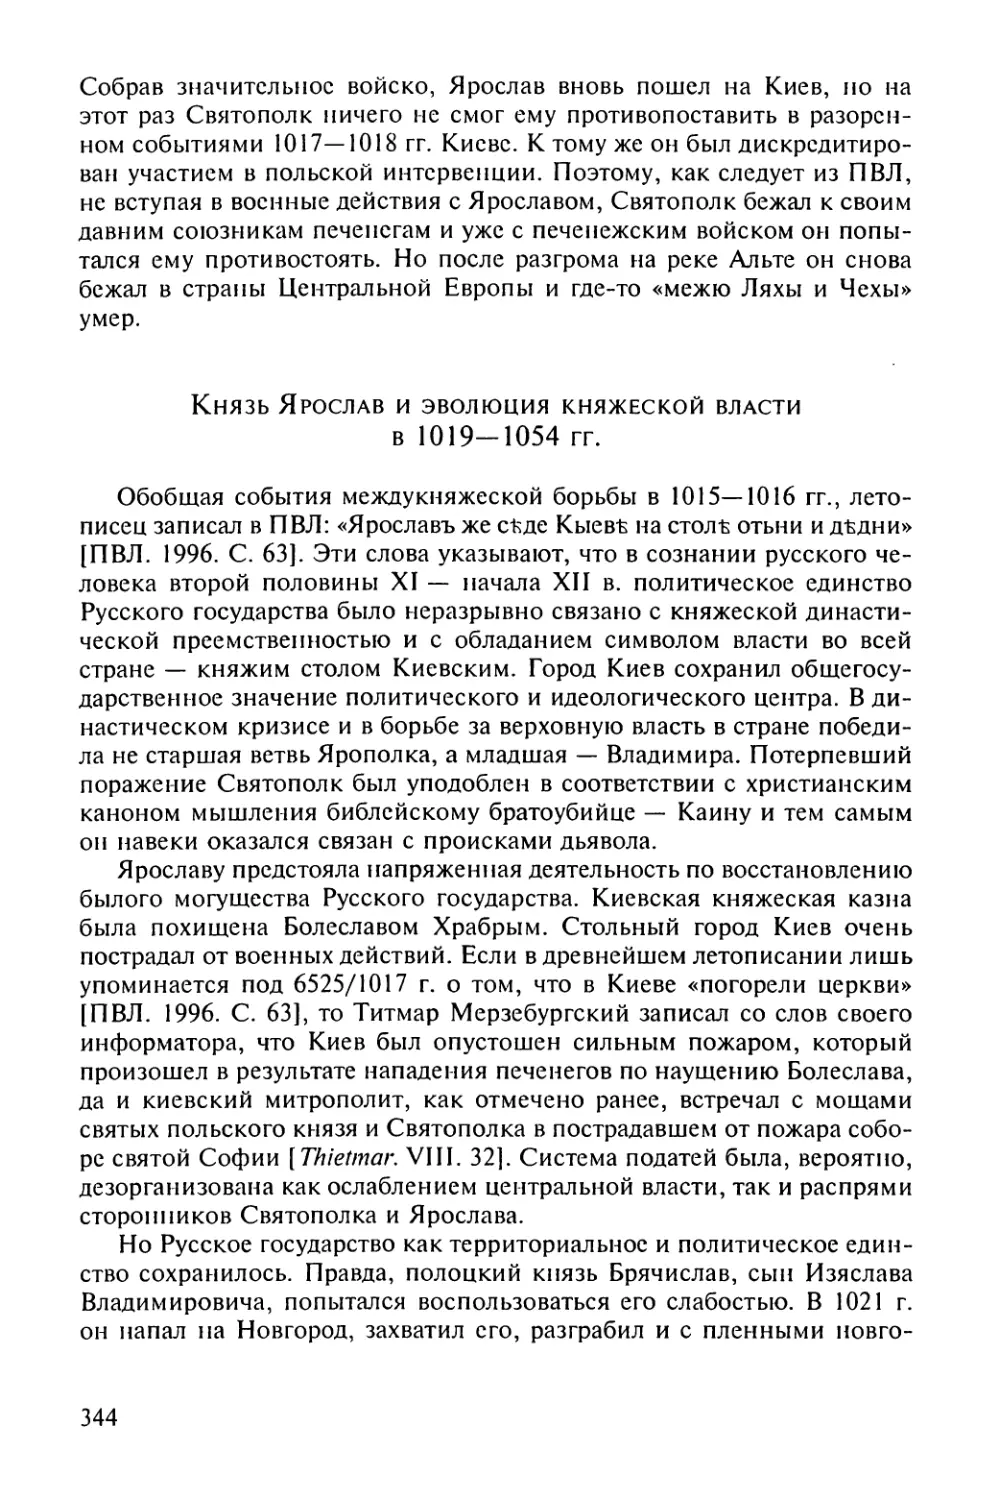 Князь Ярослав и эволюция княжеской власти в 1019 – 1054 гг.